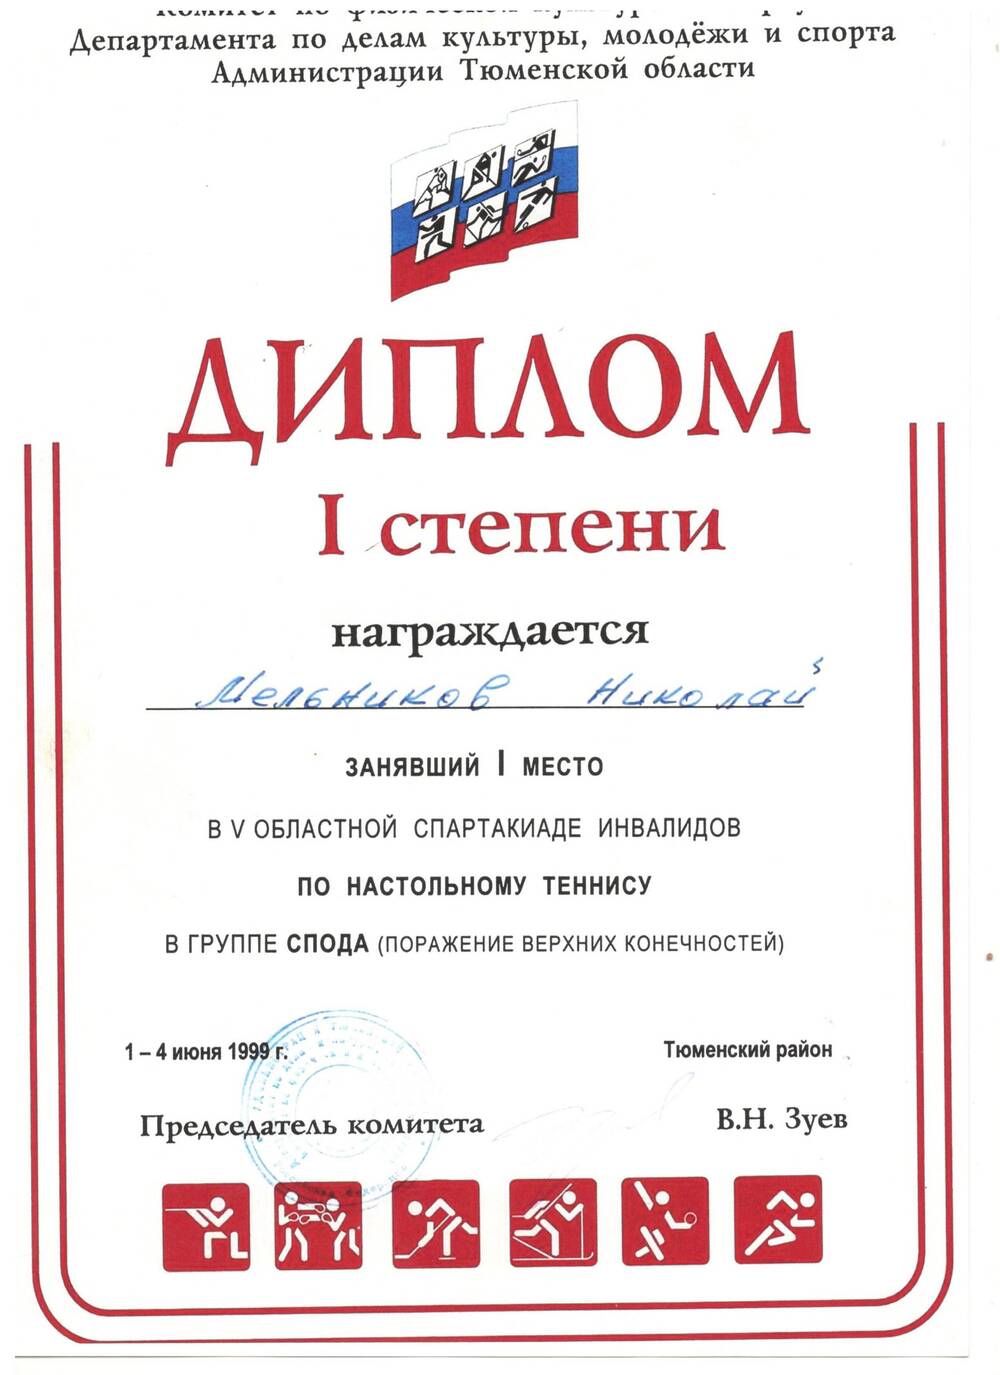 Диплом I ст. Мельникова Николая